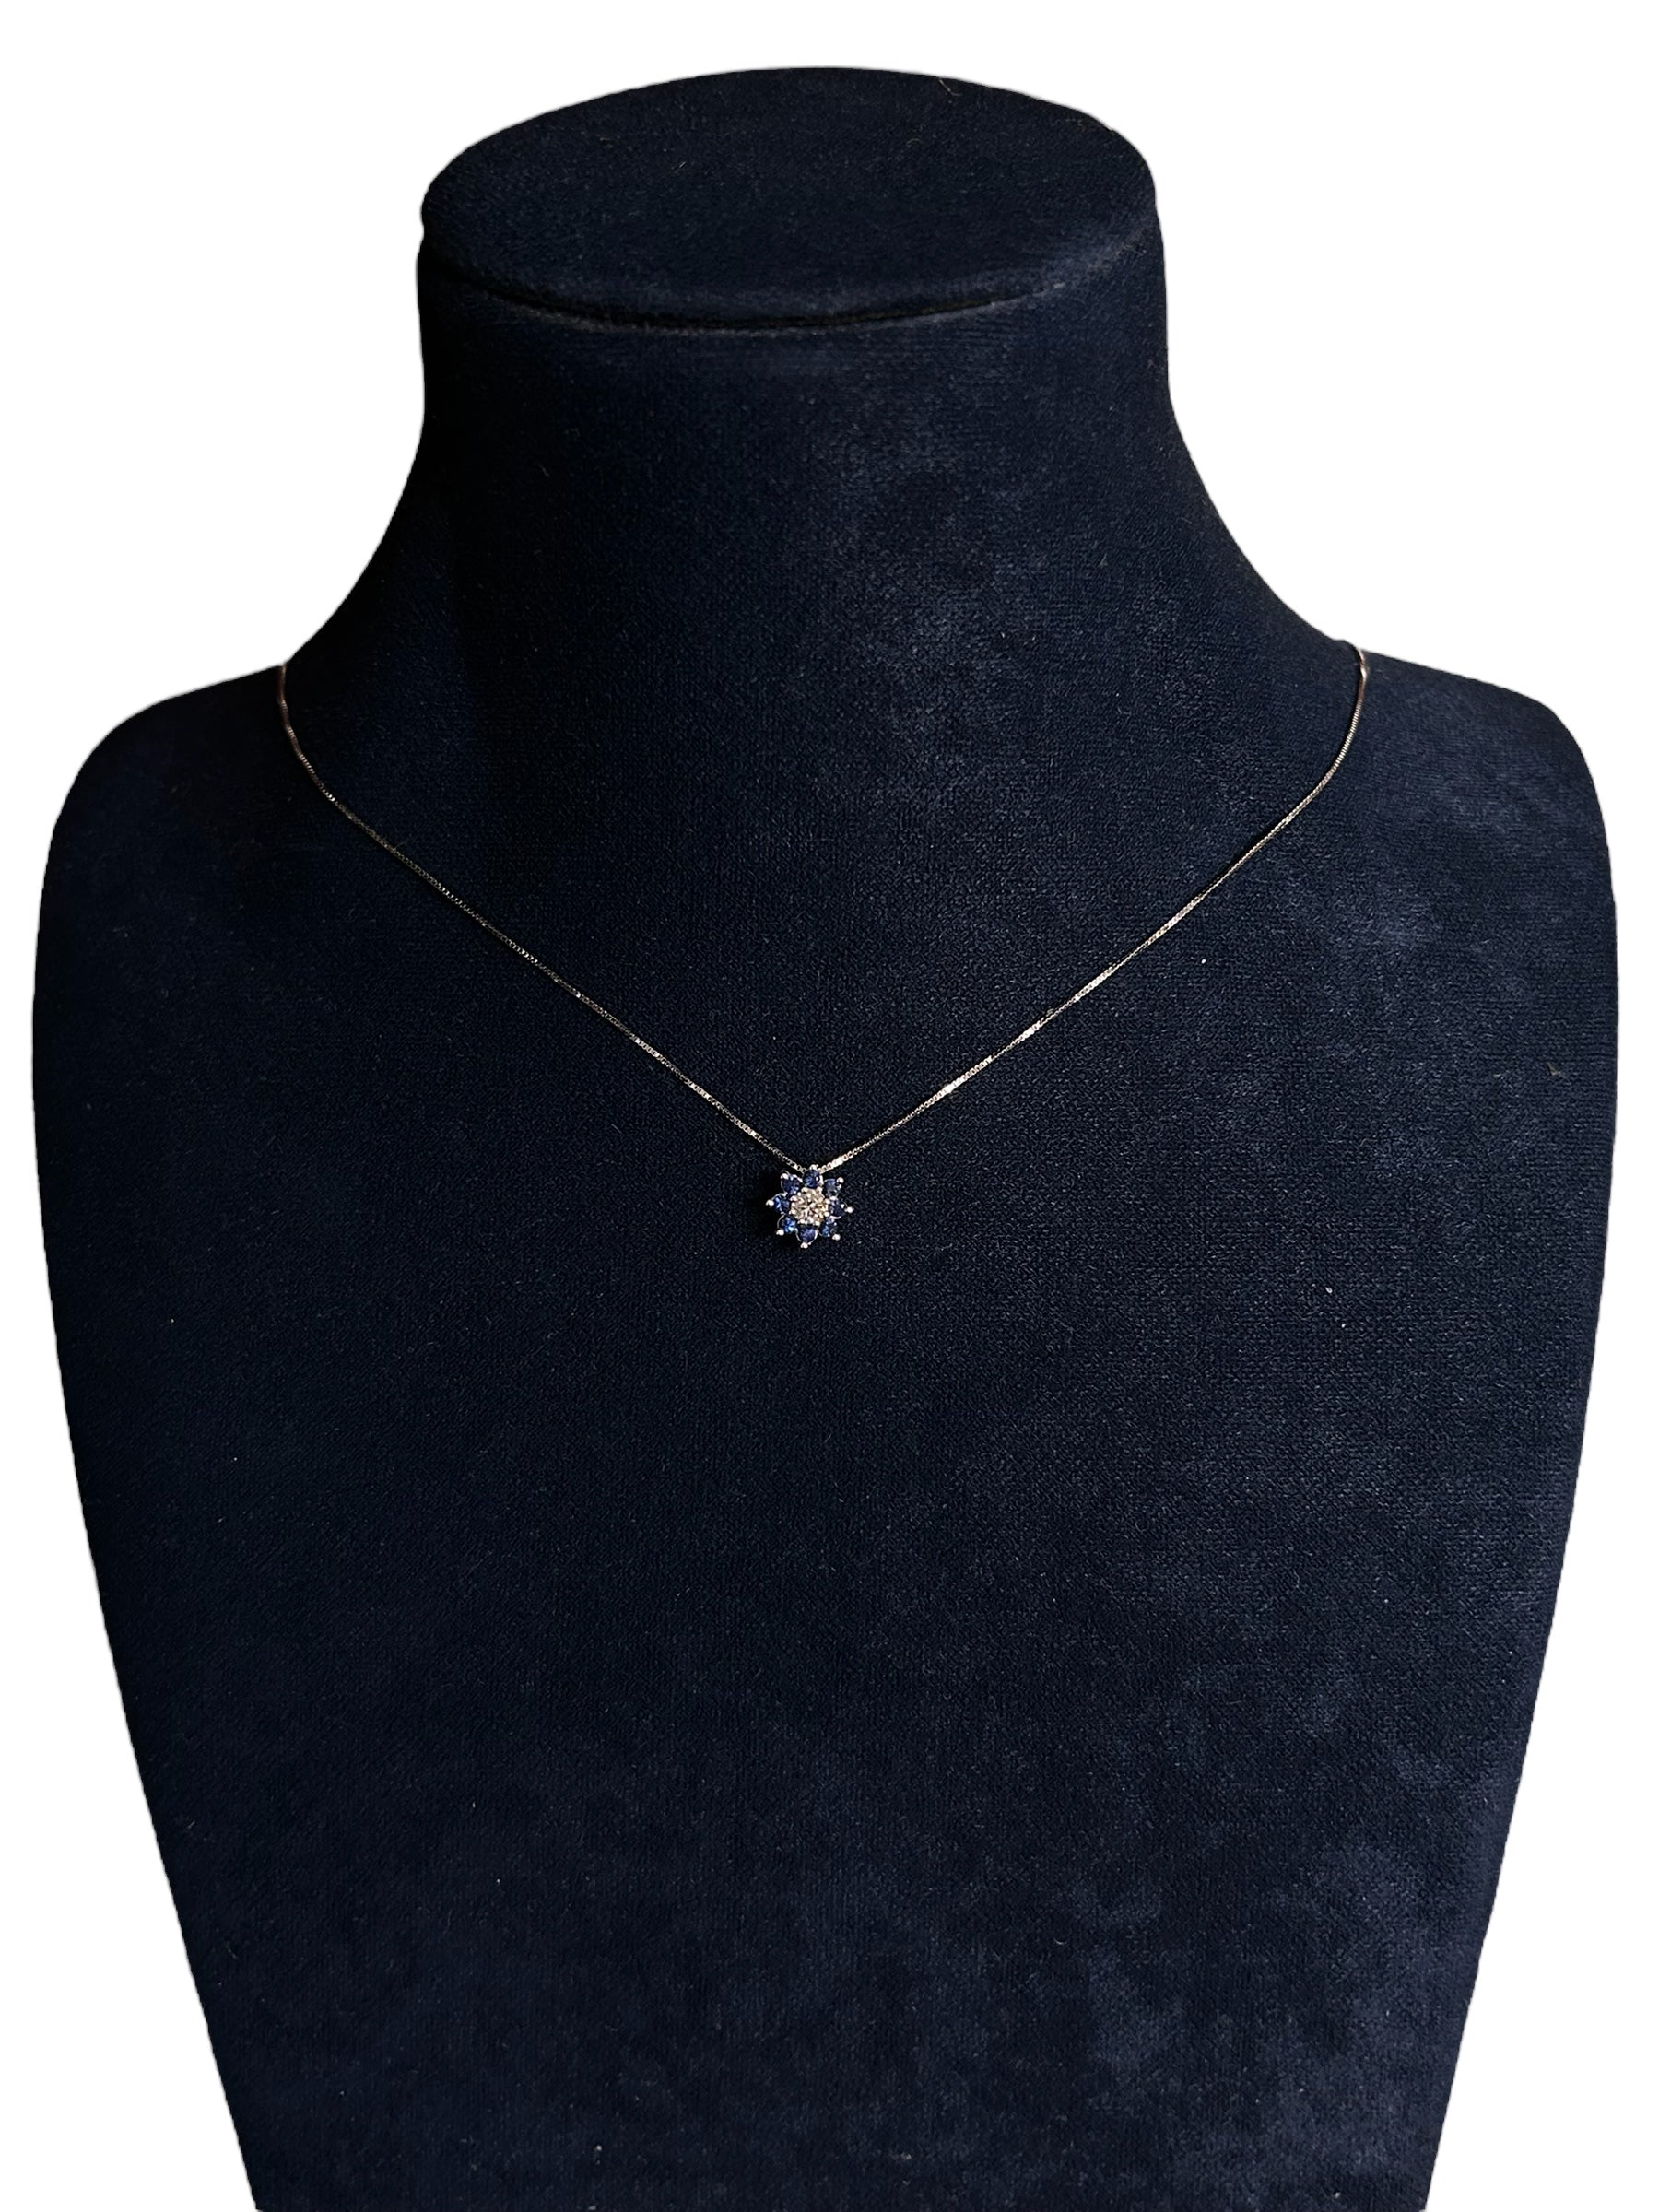 Diana - Tour de cou avec pendentif fleur saphir avec diamants, saphirs 0,12ct - CL DIANA 30 INVERSO